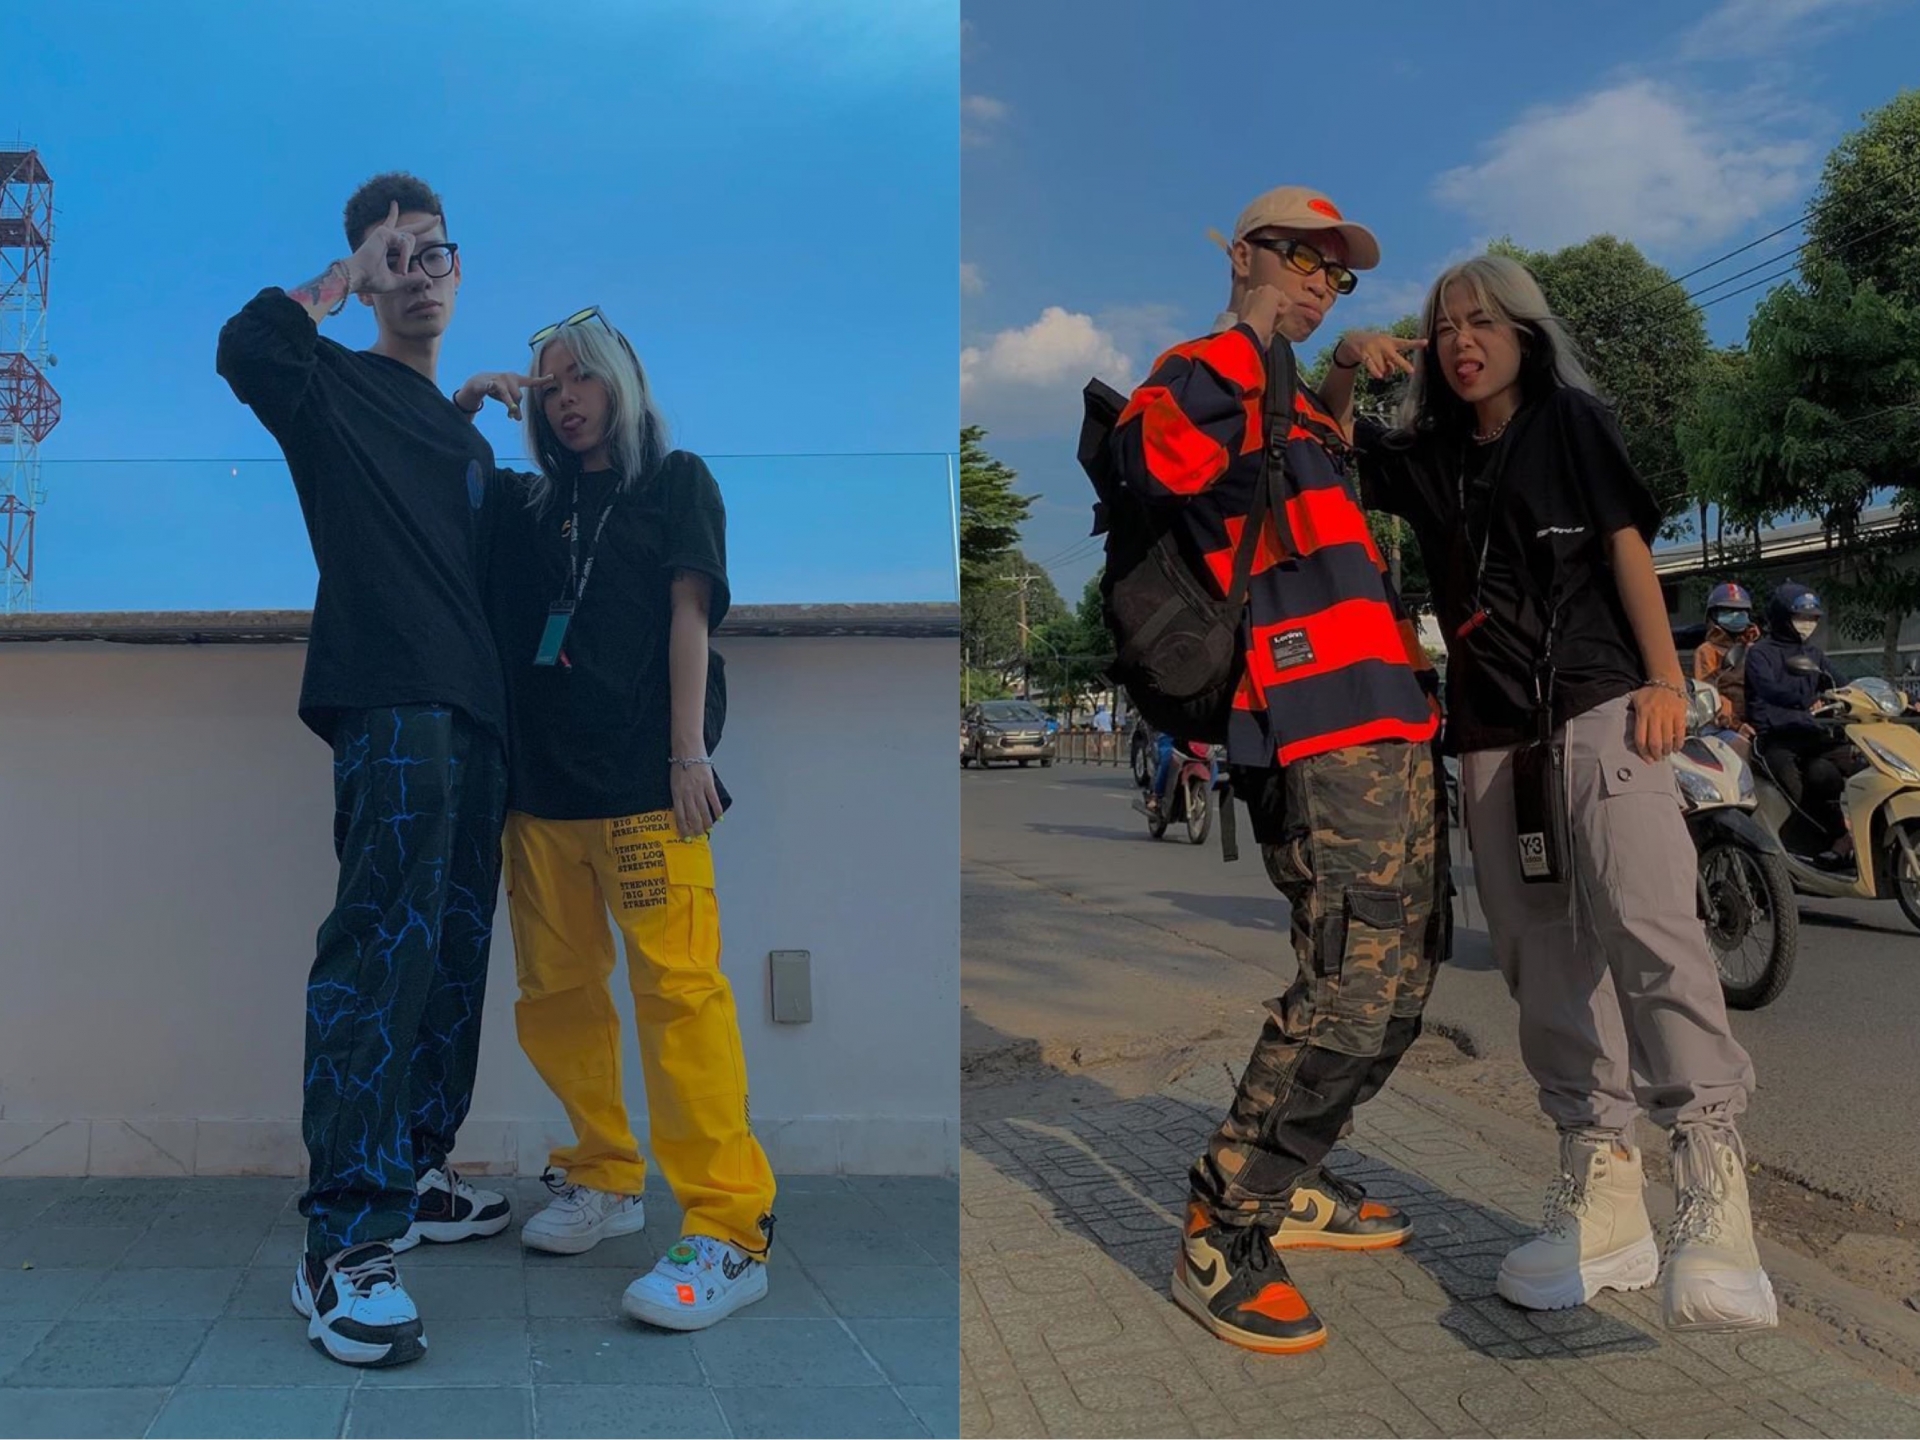 Là những rapper mang đậm phong cách hiphop, style của cặp đôi MCK - Tlinh thường có sự xuất hiện của những chiếc quần túi hộp cá tính, áo phông oversized cùng giày sneaker chunky hầm hố.